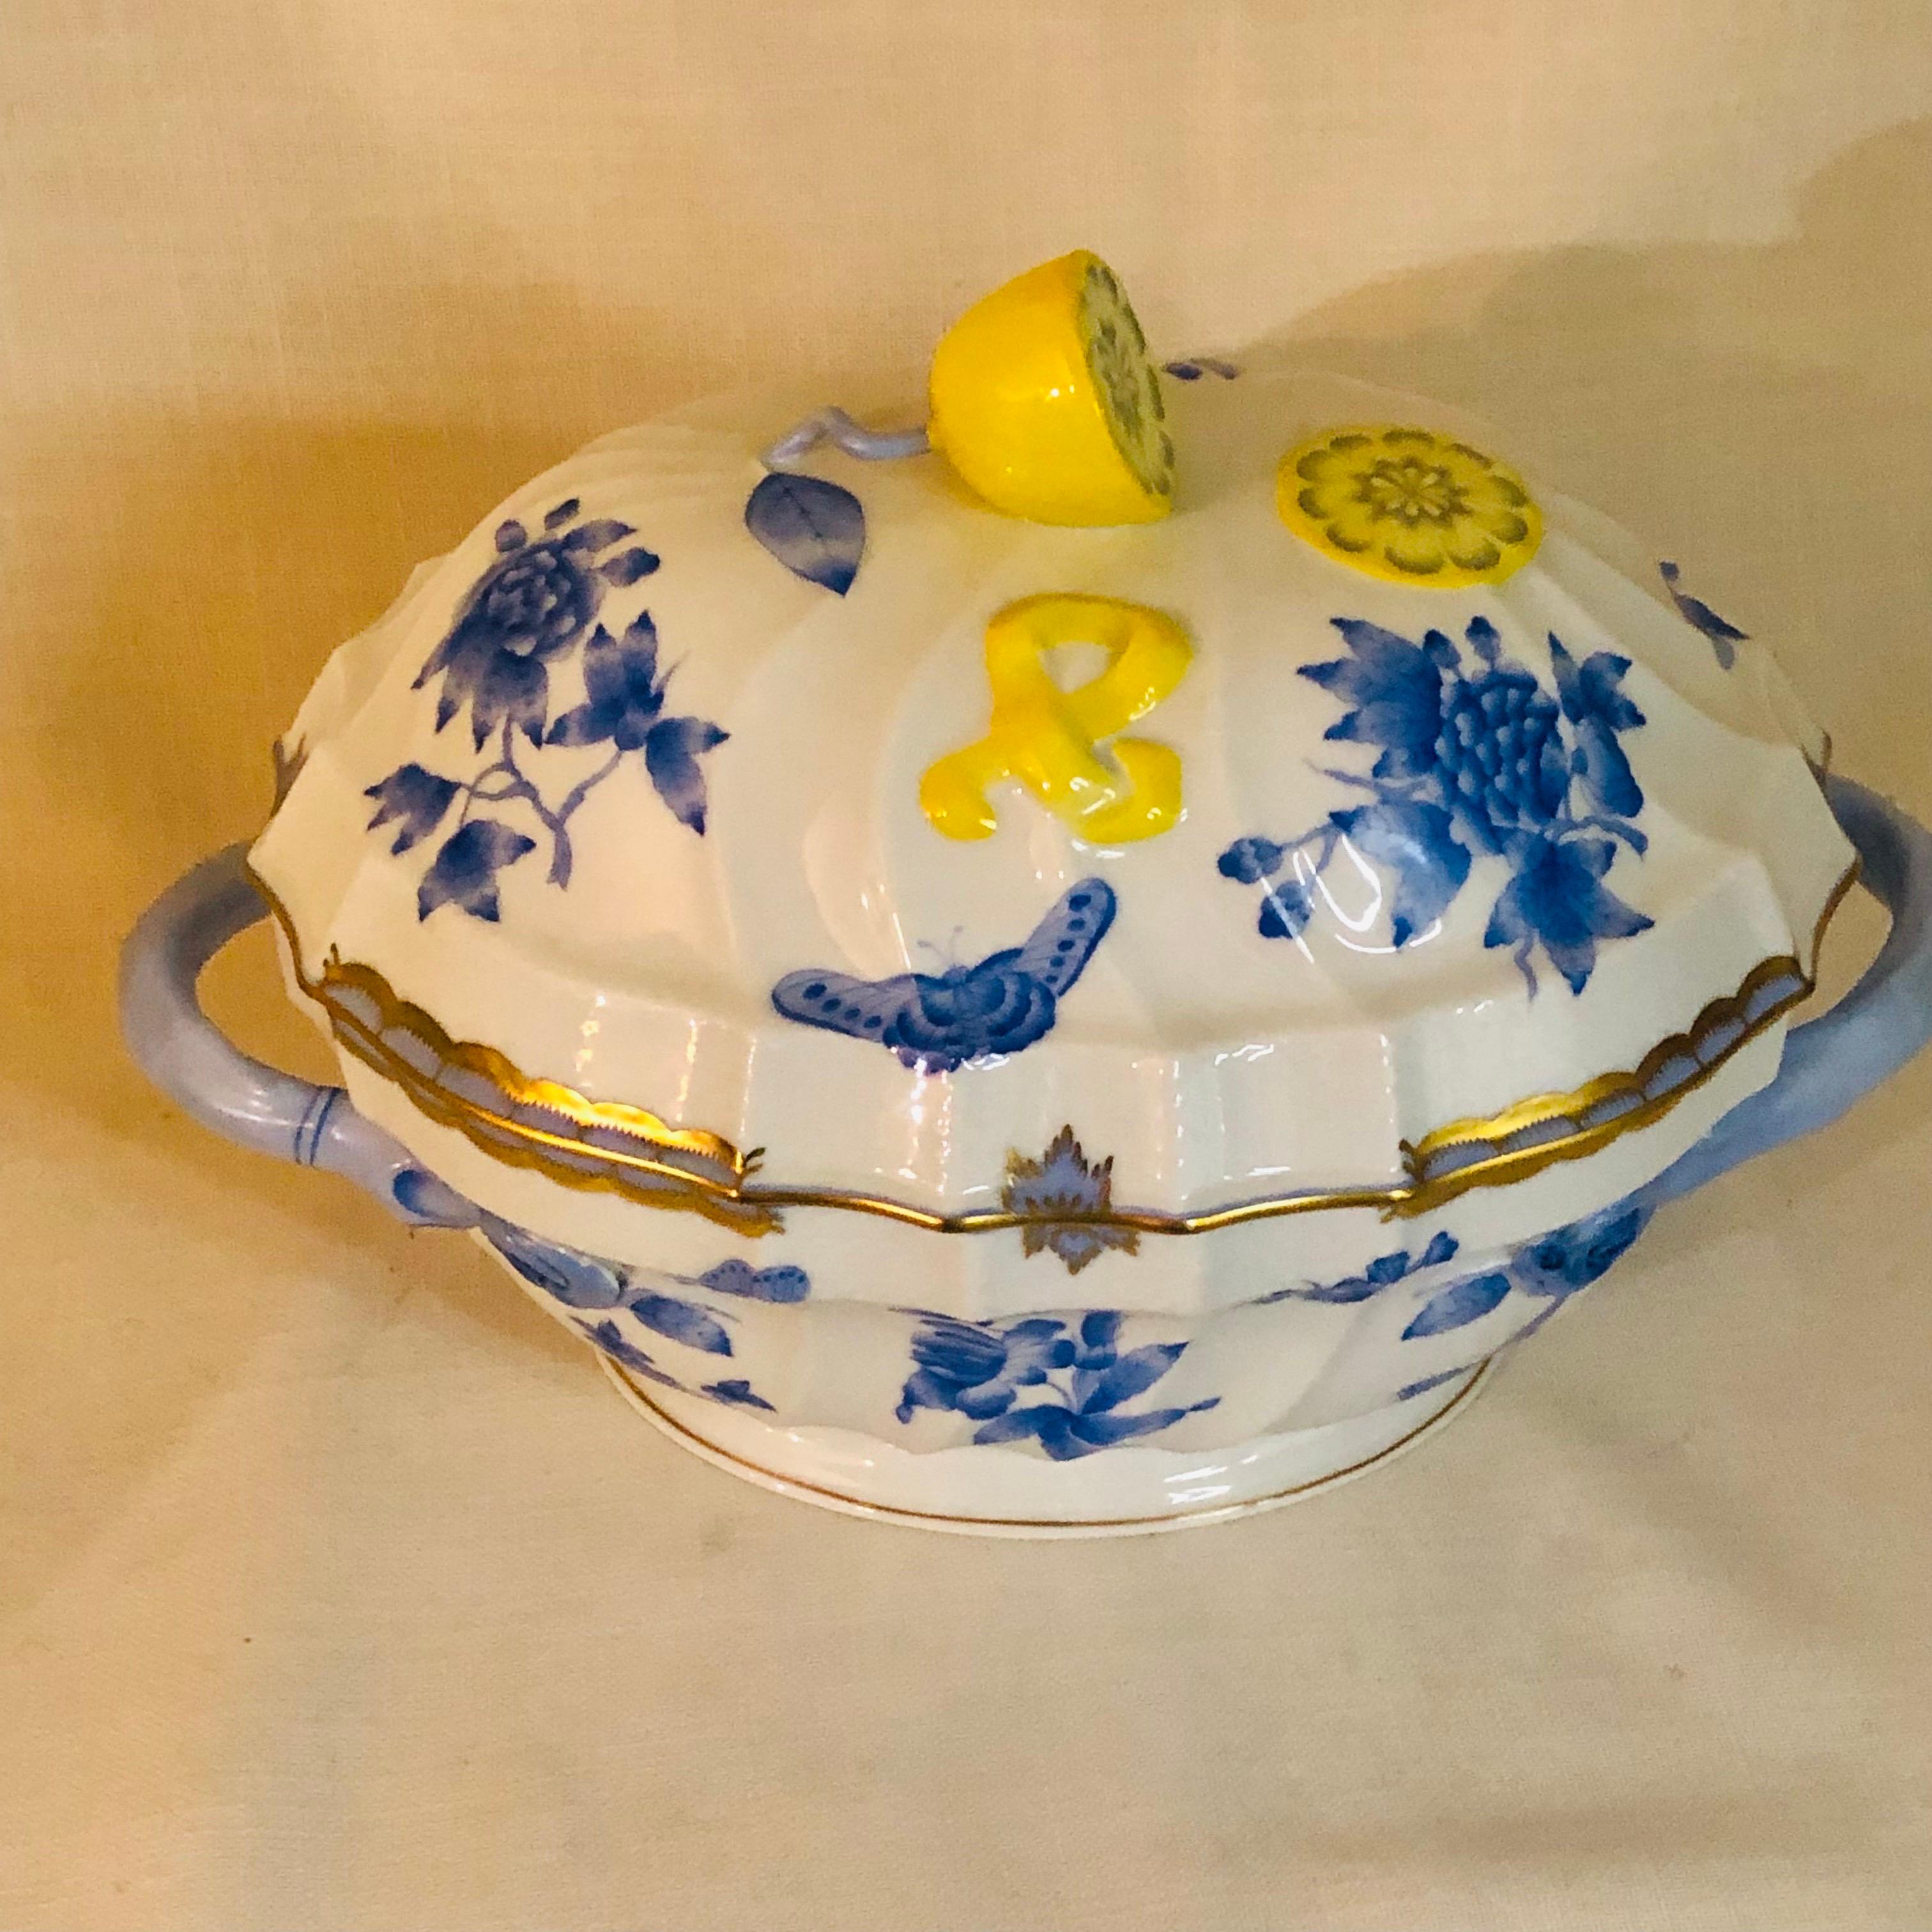 Eine schöne Herender Fortuna-Suppenterrine, bemalt mit blauen Schmetterlingen und Blumen auf weißem Grund und mit 24-karätigem Gold verziert. Es hat eine wundervoll geformte Zitrone auf seinem Cover. Es wäre ein reizvolles Dekorationsstück auf Ihrem